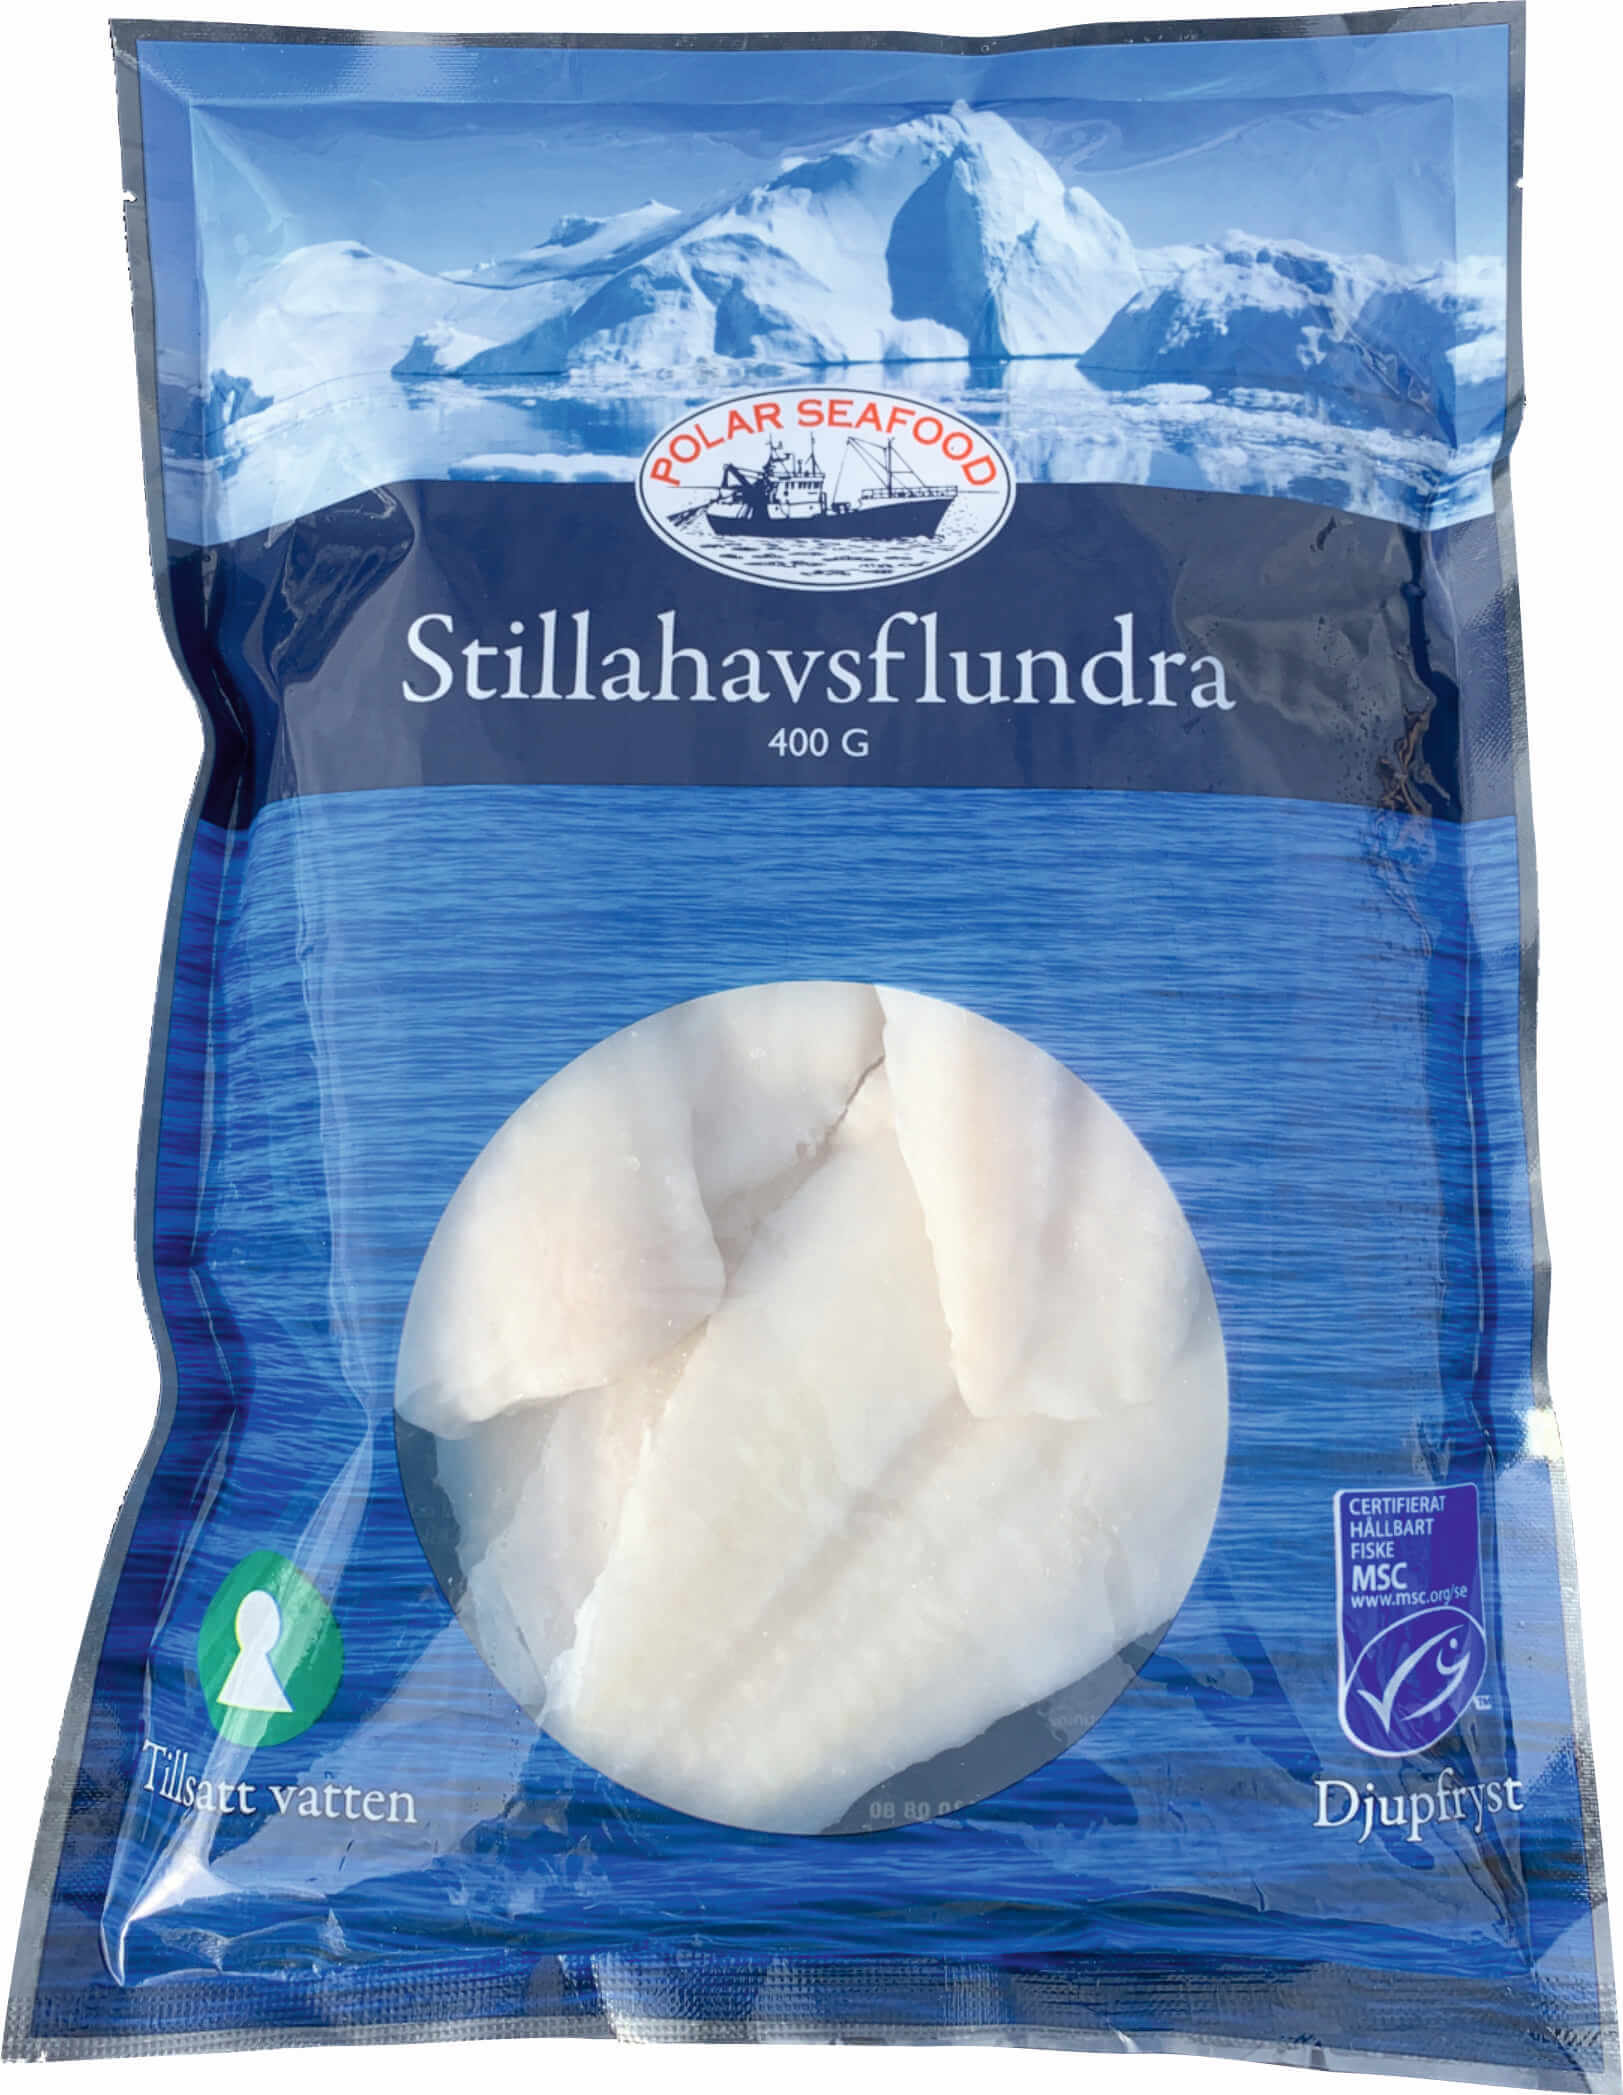 Stillahavsflundra - Beställ fisk & skaldjur till din matbutik. Polar Seafood AB